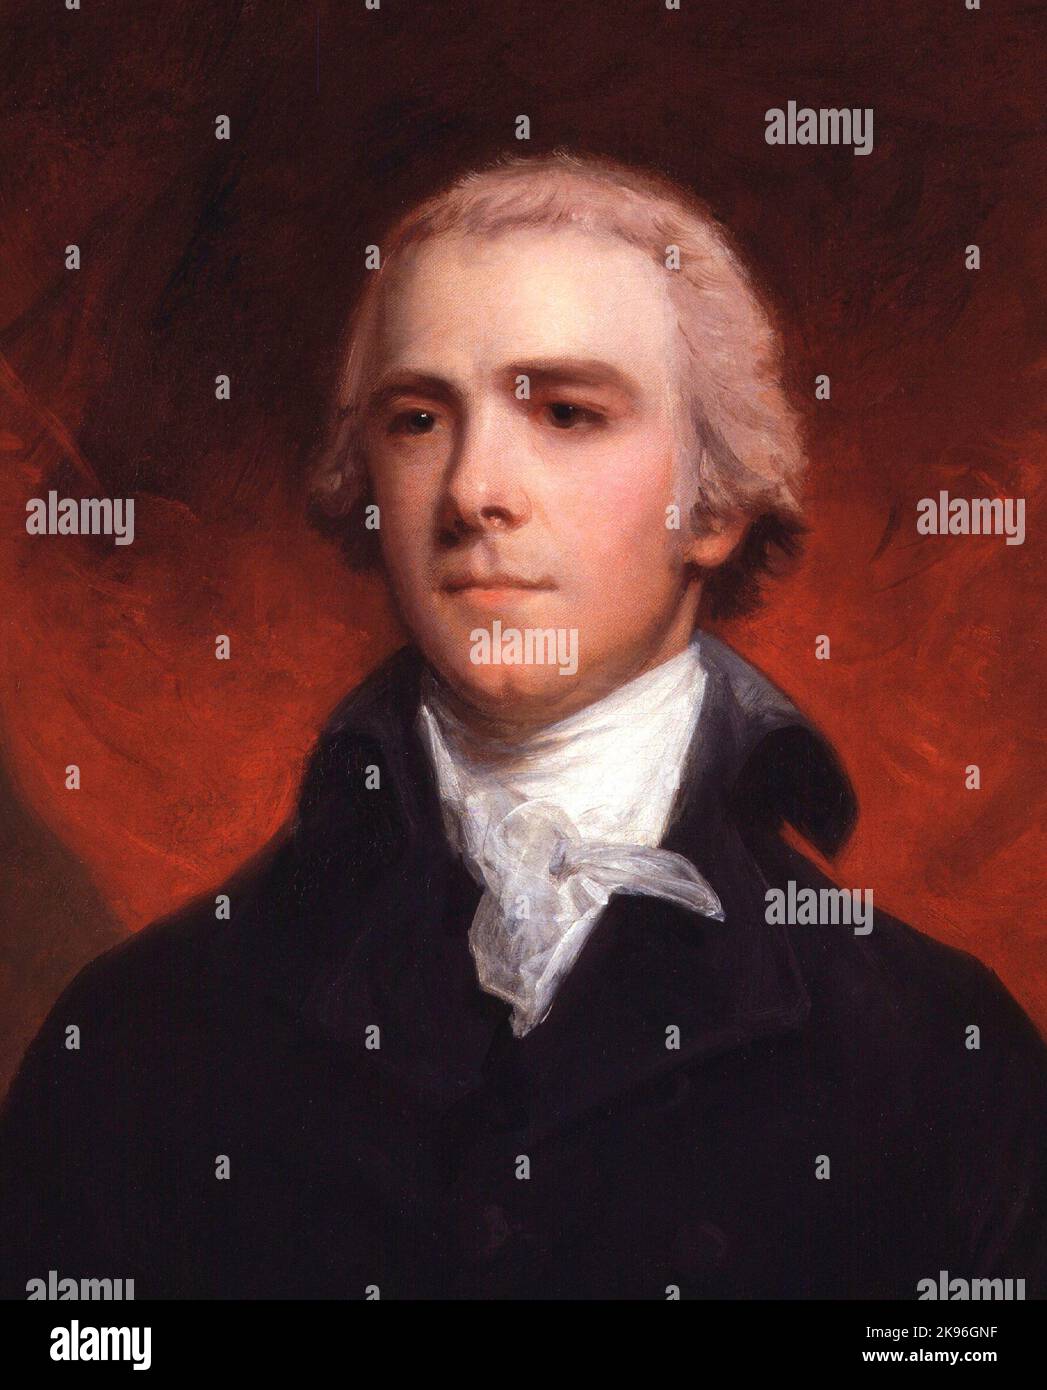 William Wyndham Grenville, 1st Baron Grenville, (1759 – 1834) politicien britannique Tory qui a été Premier ministre du Royaume-Uni de 1806 à 1807 Banque D'Images